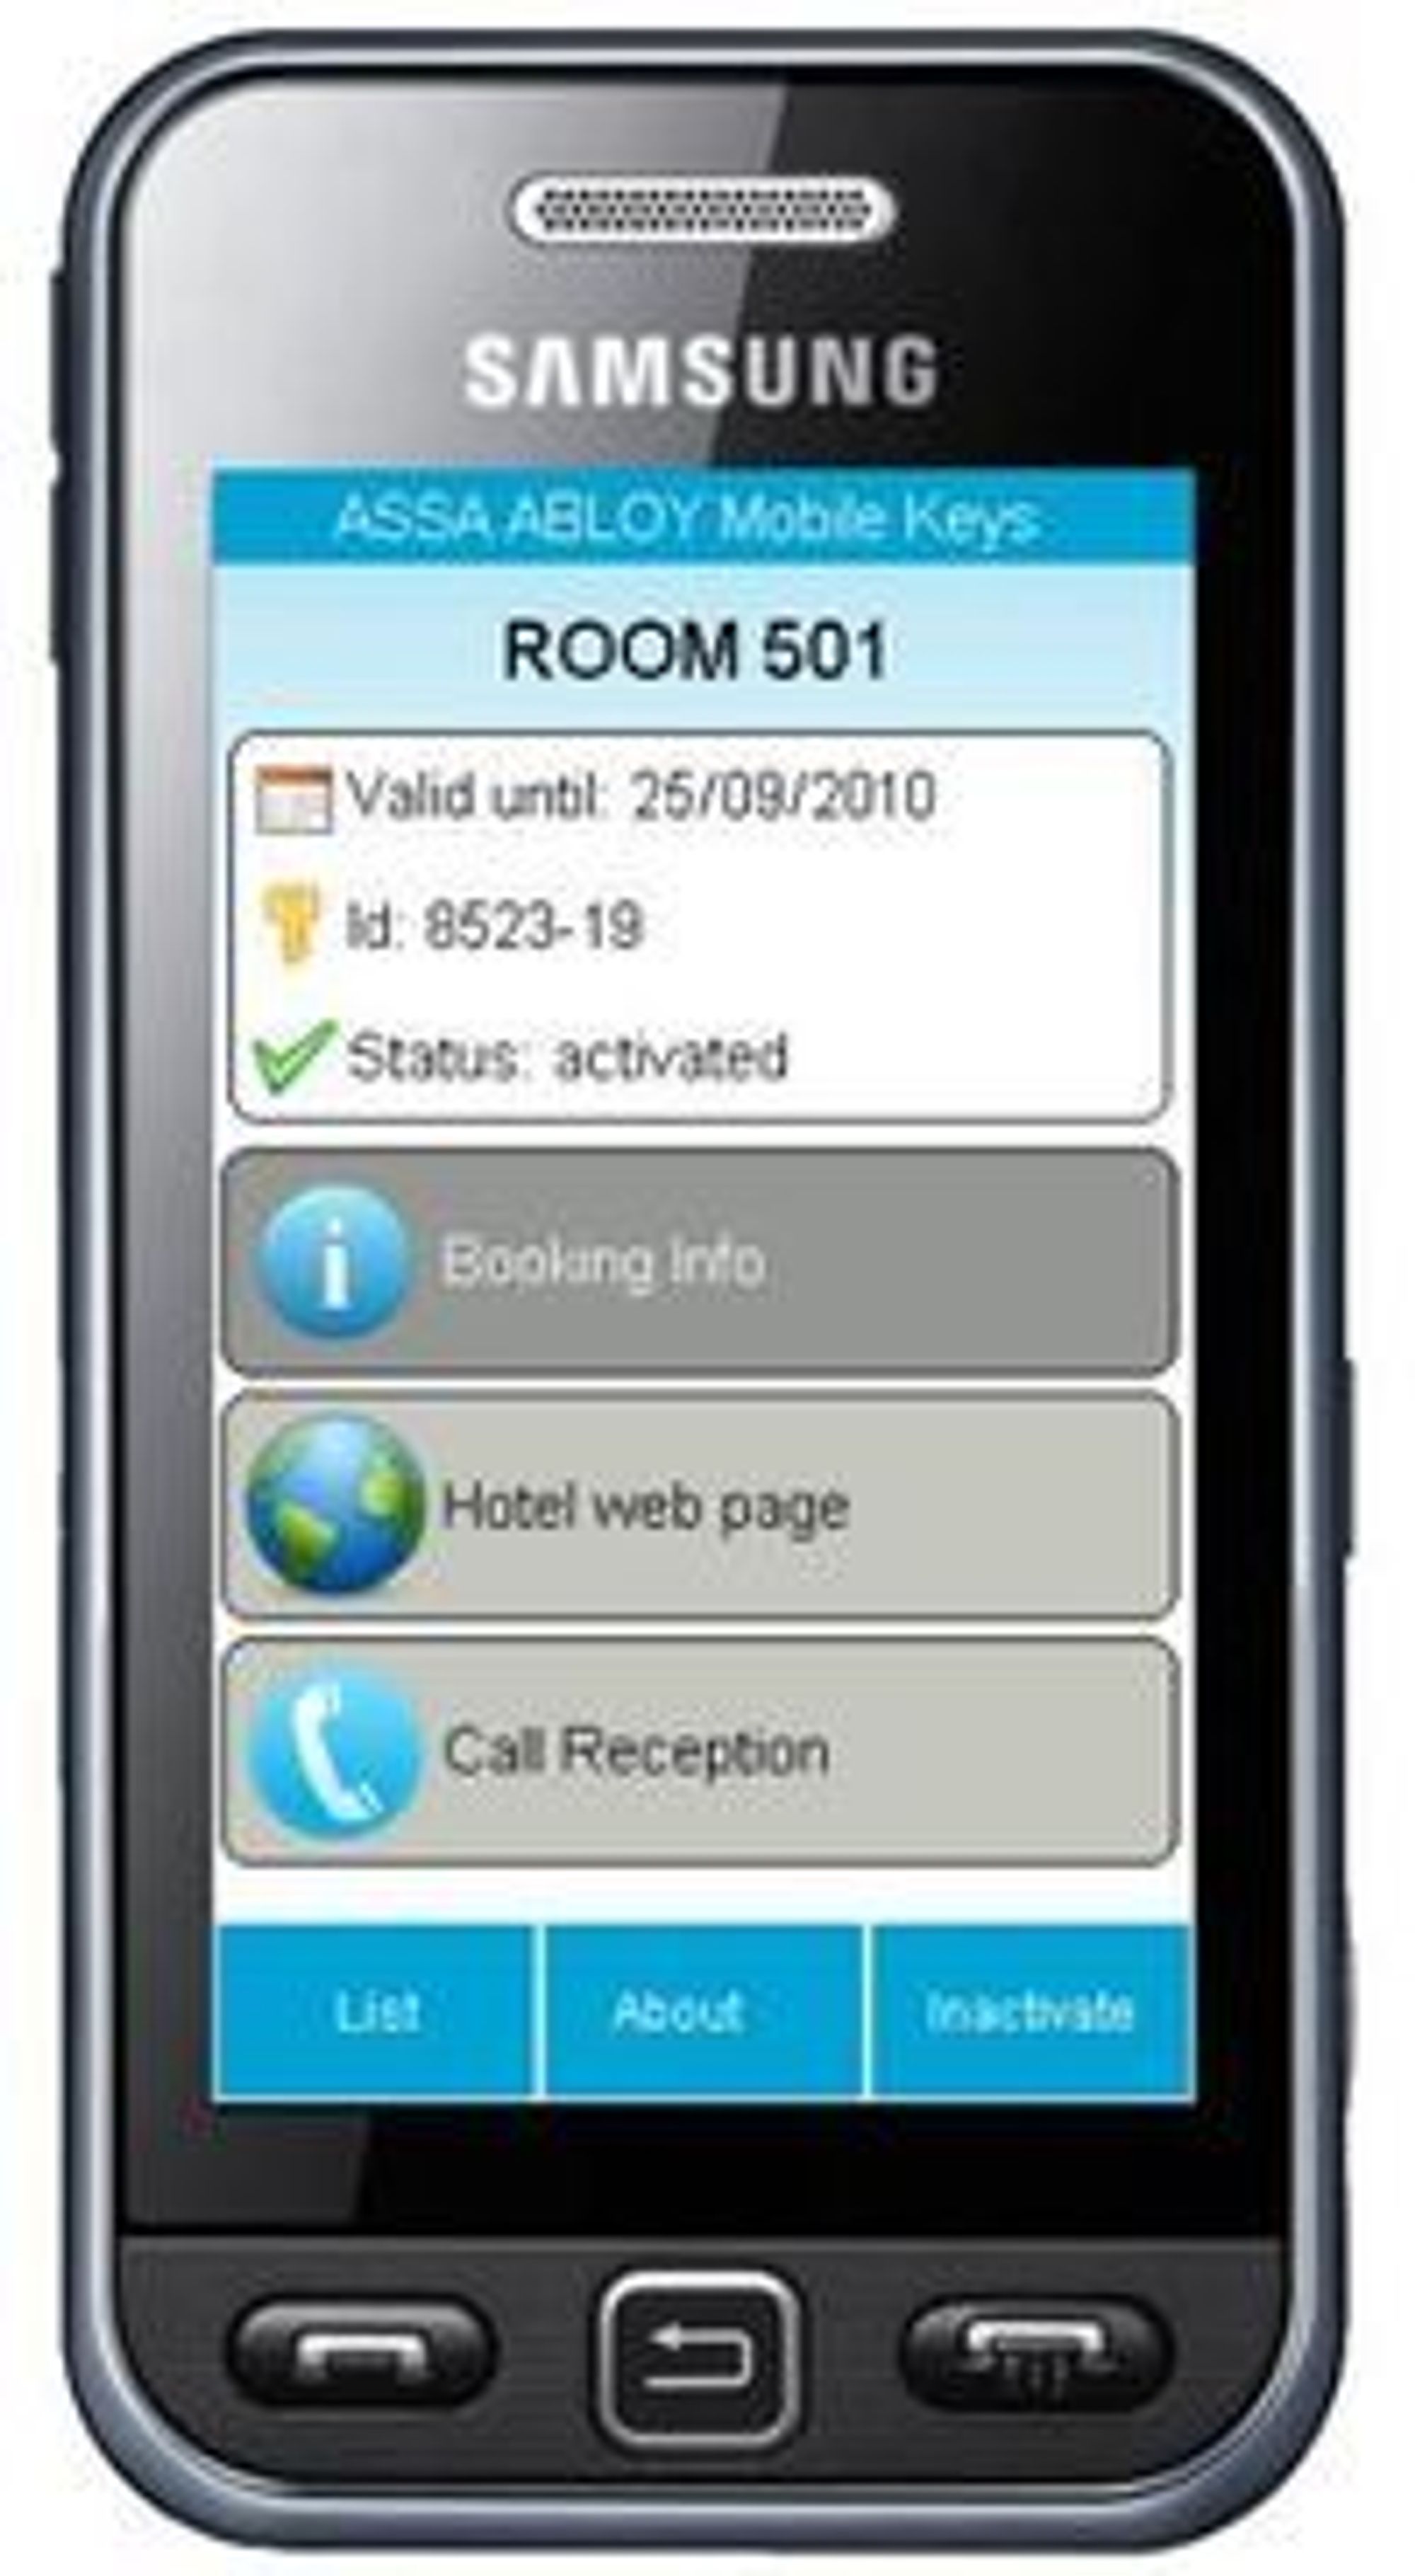 Dital hotellromnøkkel på Samsung-mobil med NFC-støtte.